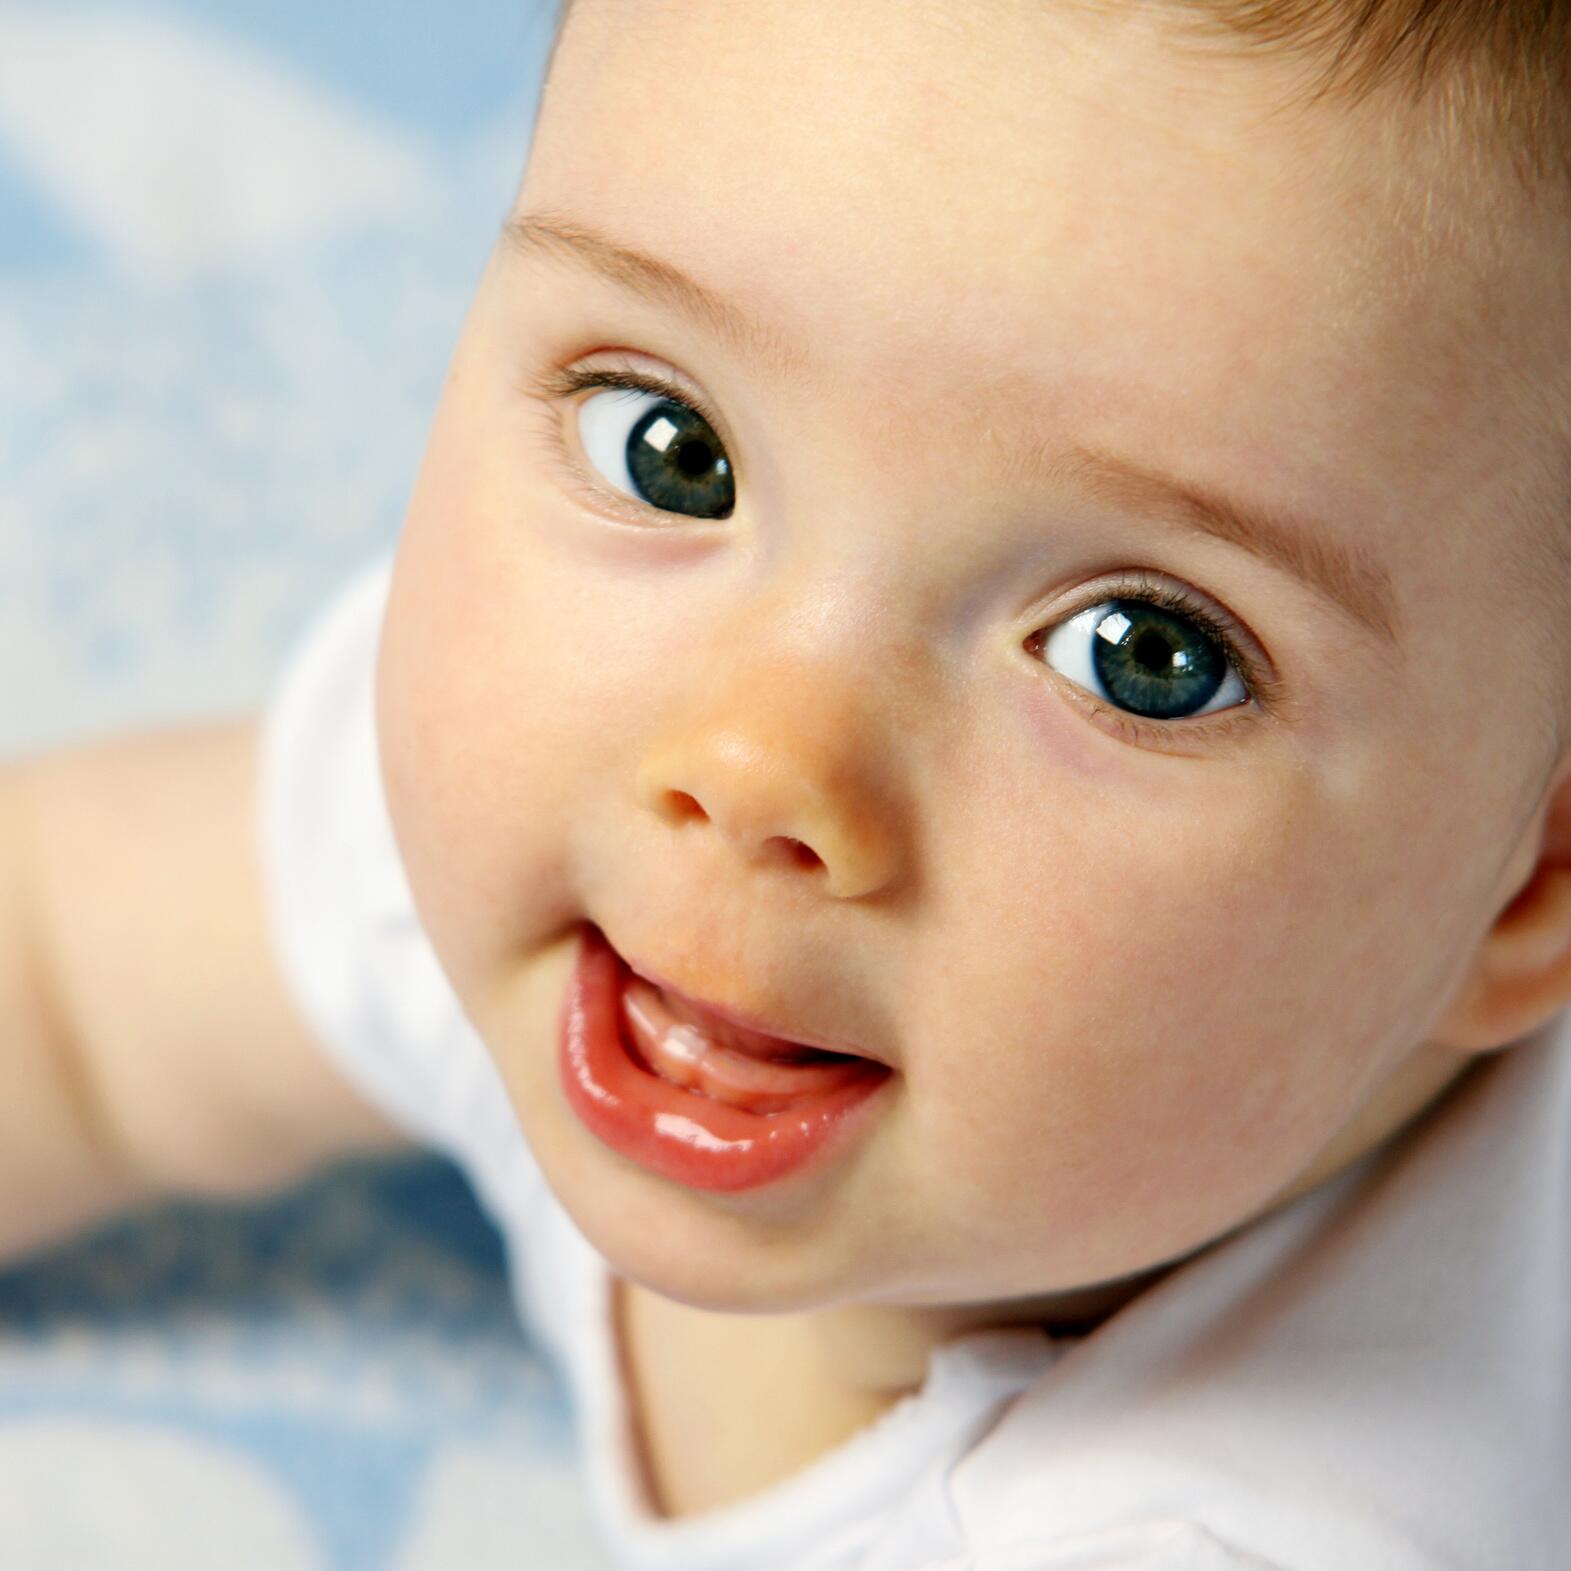 Poussées dentaires : quand mon bébé fait-il ses premières dents ?